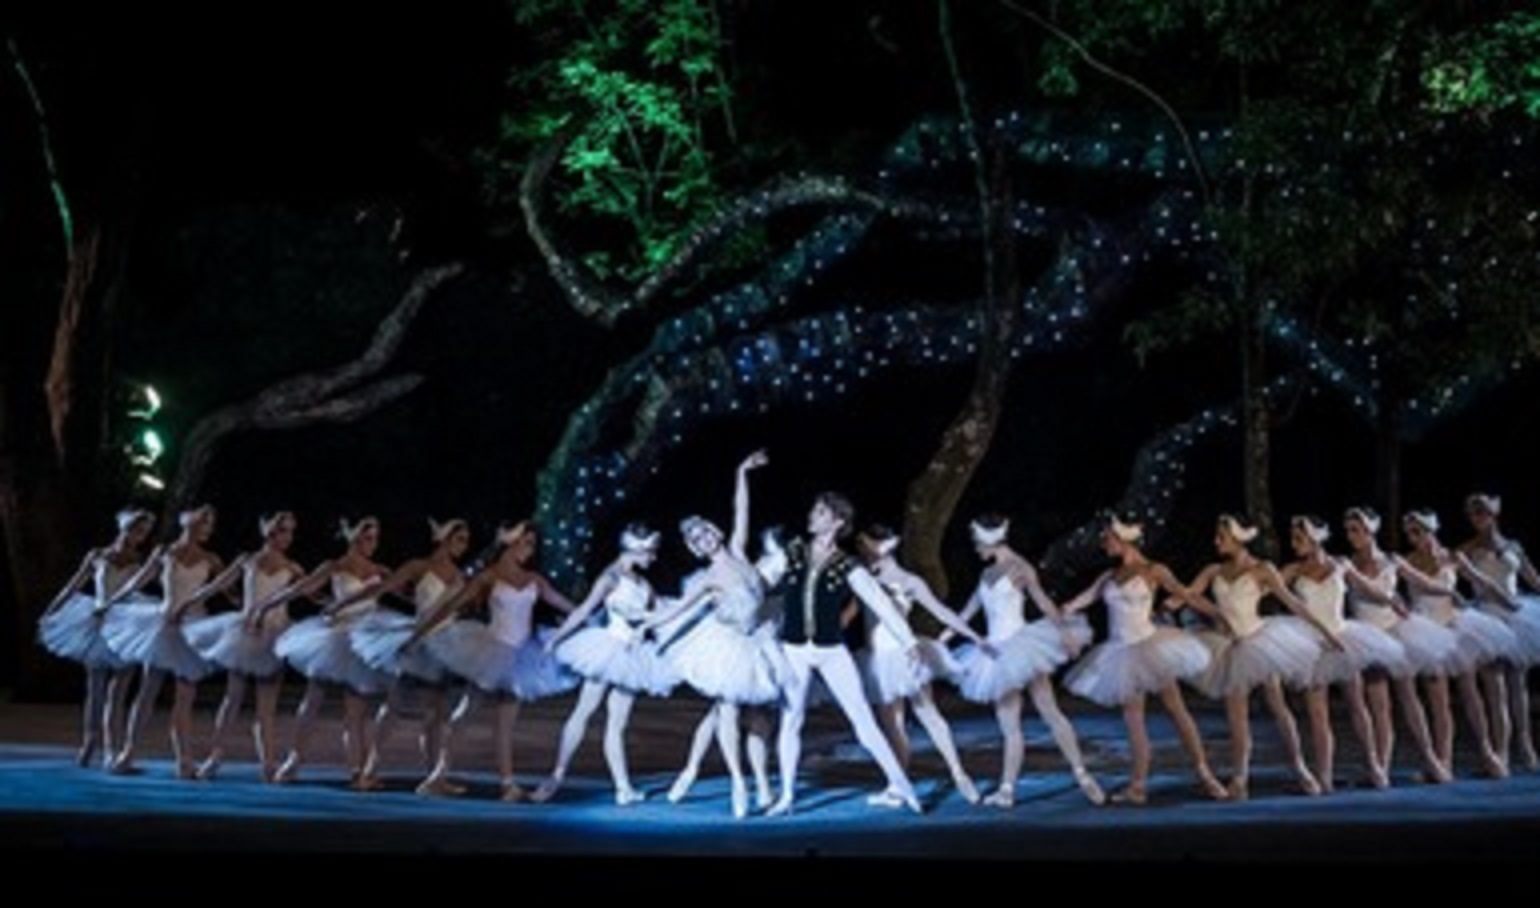 La Compañía Nacional de Danza transmitirá actividades en vivo para celebrar el 44 aniversario con su nombre actual